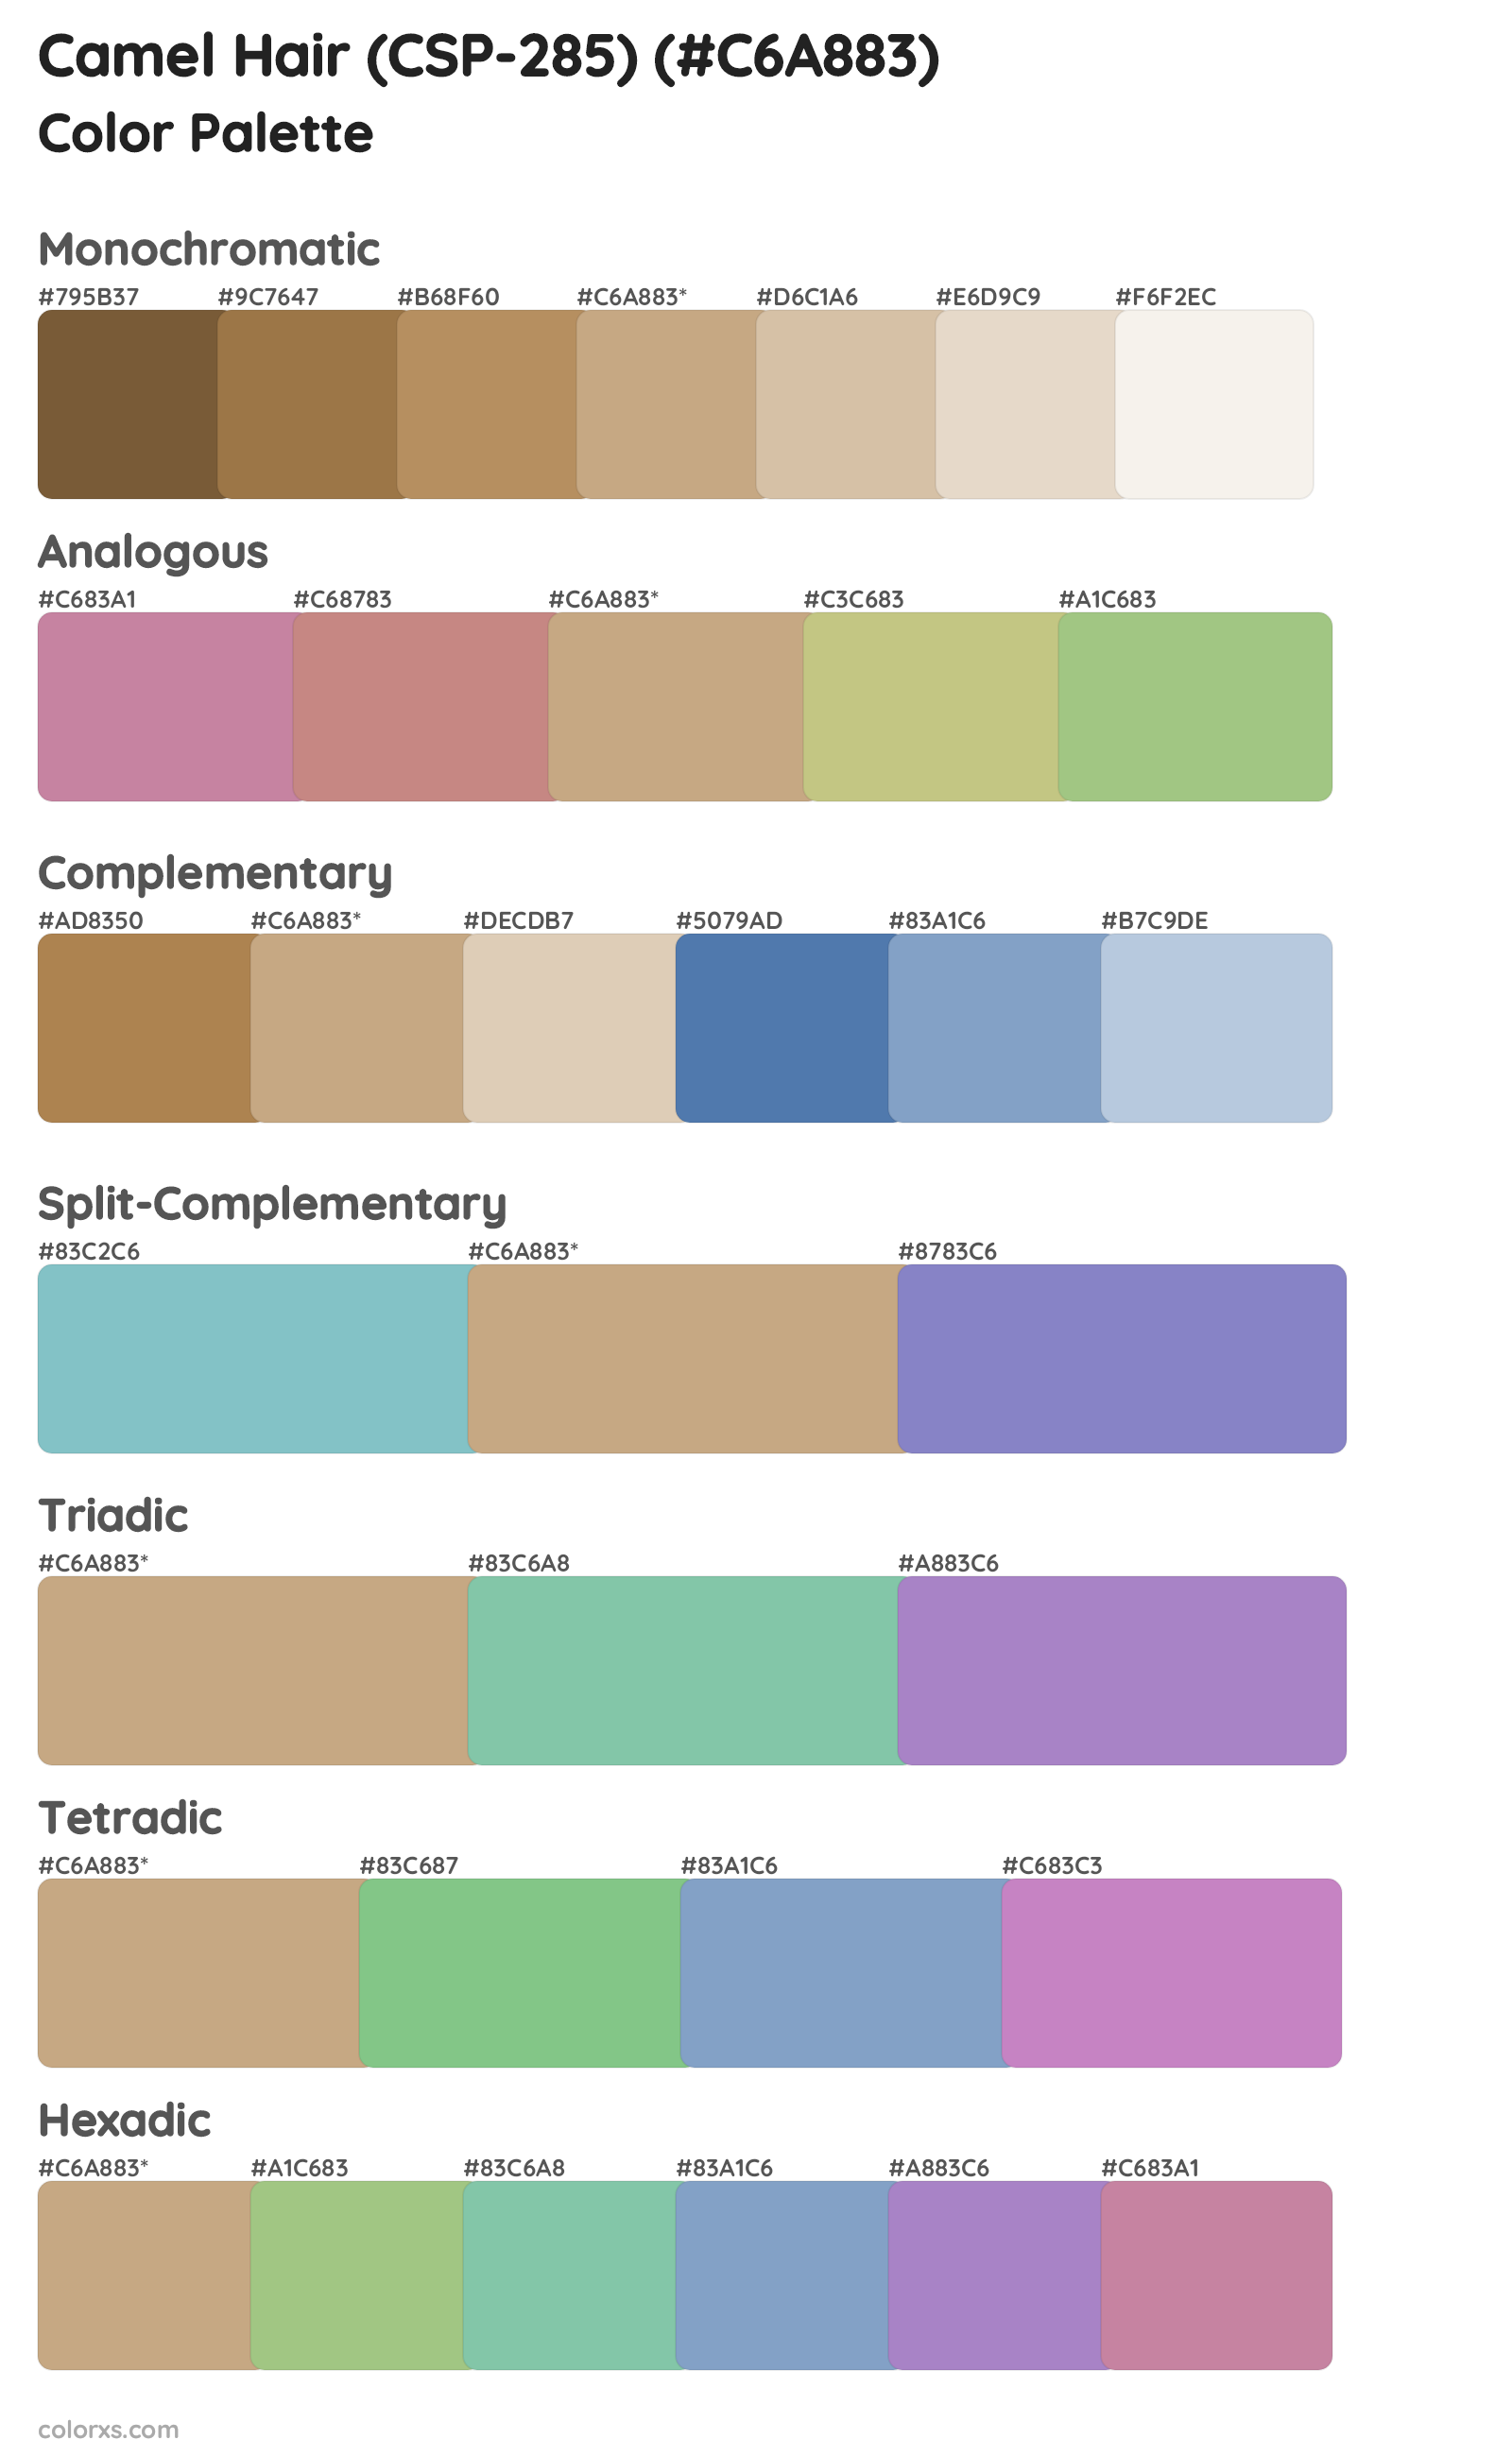 Camel Hair (CSP-285) Color Scheme Palettes